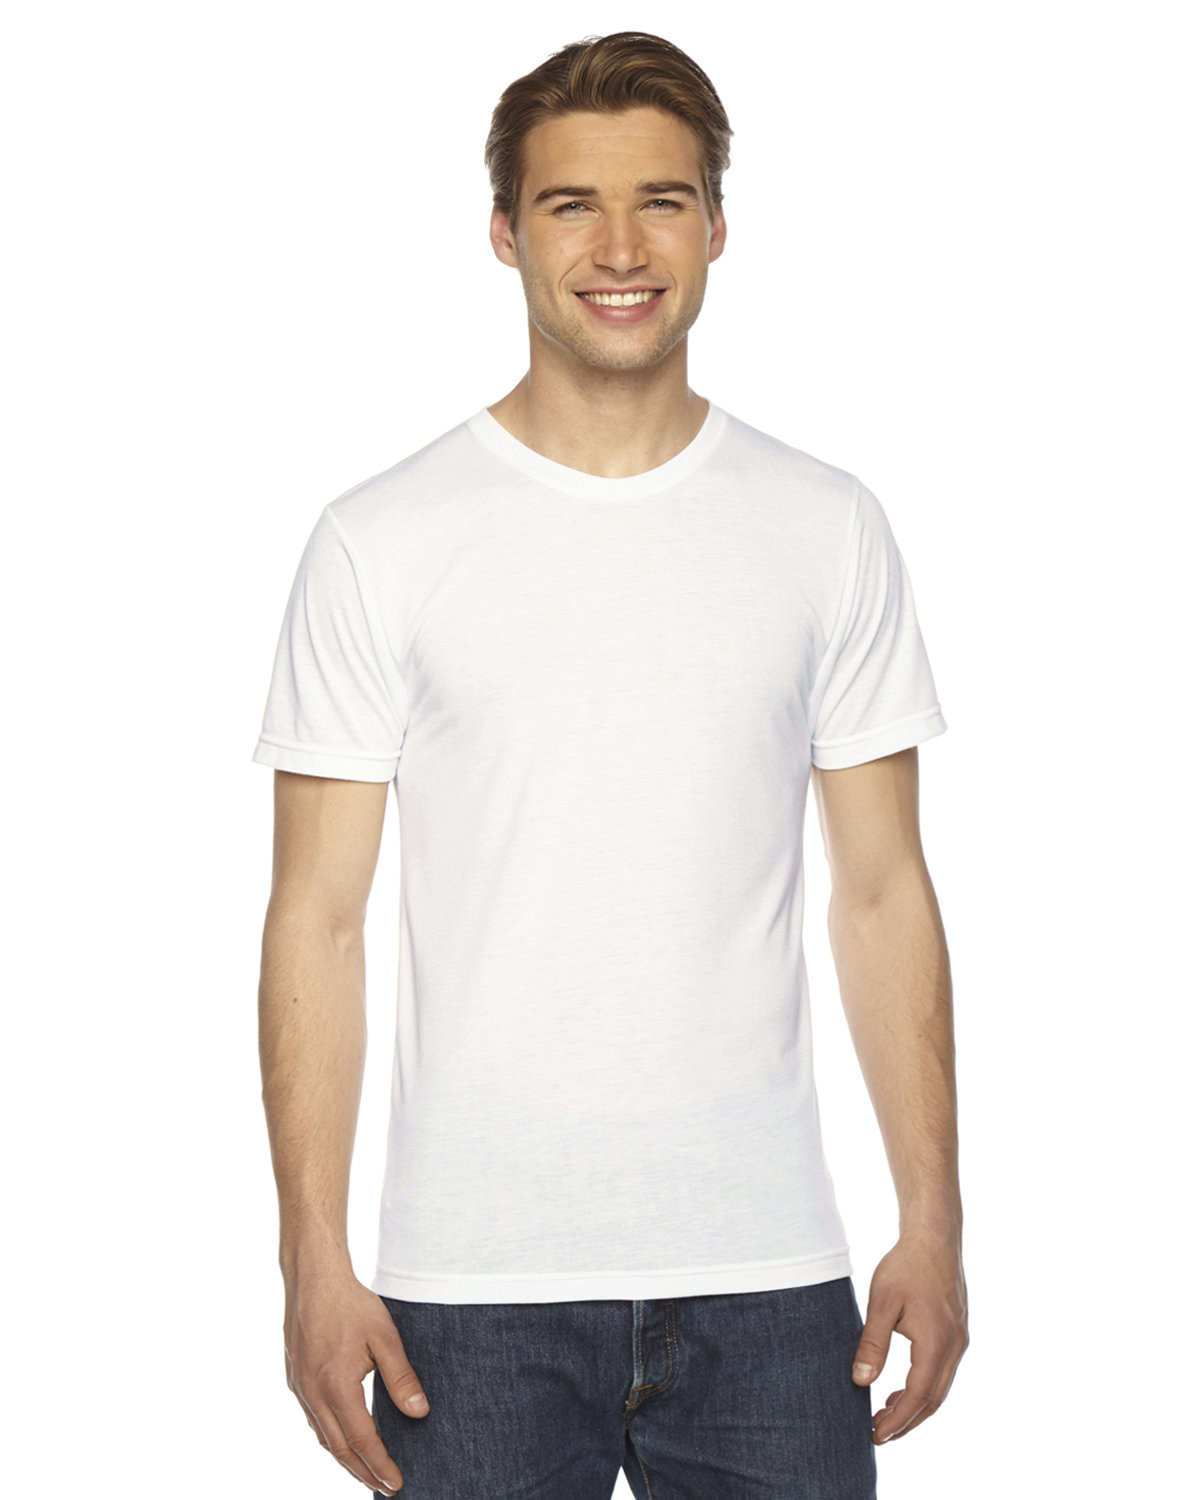 American Apparel pour Femme//Femmes en polycoton à manches courtes T-Shirt